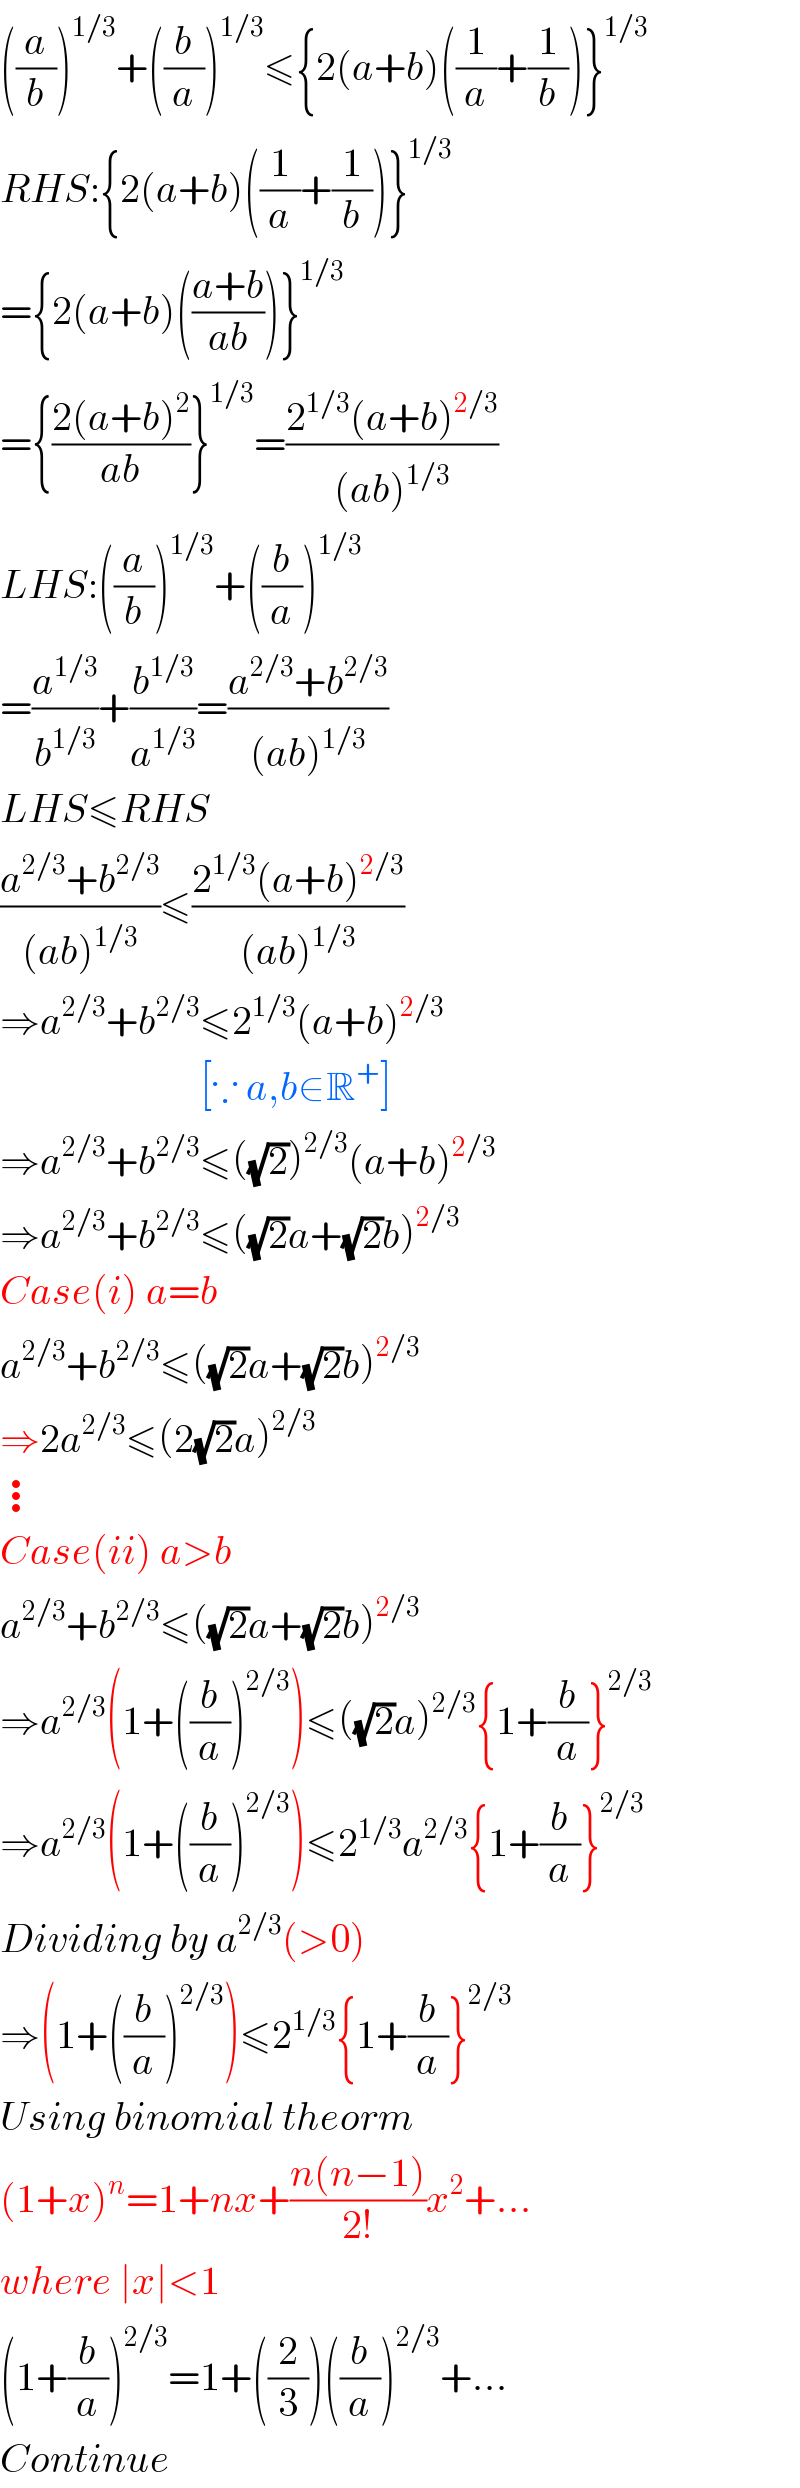 ((a/b))^(1/3) +((b/a))^(1/3) ≤{2(a+b)((1/a)+(1/b))}^(1/3)   RHS:{2(a+b)((1/a)+(1/b))}^(1/3)   ={2(a+b)(((a+b)/(ab)))}^(1/3)   ={((2(a+b)^2 )/(ab))}^(1/3) =((2^(1/3) (a+b)^(2/3) )/((ab)^(1/3) ))  LHS:((a/b))^(1/3) +((b/a))^(1/3)   =(a^(1/3) /b^(1/3) )+(b^(1/3) /a^(1/3) )=((a^(2/3) +b^(2/3) )/((ab)^(1/3) ))  LHS≤RHS  ((a^(2/3) +b^(2/3) )/((ab)^(1/3) ))≤((2^(1/3) (a+b)^(2/3) )/((ab)^(1/3) ))  ⇒a^(2/3) +b^(2/3) ≤2^(1/3) (a+b)^(2/3)                            [∵ a,b∈R^+ ]  ⇒a^(2/3) +b^(2/3) ≤((√2))^(2/3) (a+b)^(2/3)   ⇒a^(2/3) +b^(2/3) ≤((√2)a+(√2)b)^(2/3)   Case(i) a=b  a^(2/3) +b^(2/3) ≤((√2)a+(√2)b)^(2/3)   ⇒2a^(2/3) ≤(2(√2)a)^(2/3)   ⋮  Case(ii) a>b  a^(2/3) +b^(2/3) ≤((√2)a+(√2)b)^(2/3)   ⇒a^(2/3) (1+((b/a))^(2/3) )≤((√2)a)^(2/3) {1+(b/a)}^(2/3)   ⇒a^(2/3) (1+((b/a))^(2/3) )≤2^(1/3) a^(2/3) {1+(b/a)}^(2/3)   Dividing by a^(2/3) (>0)  ⇒(1+((b/a))^(2/3) )≤2^(1/3) {1+(b/a)}^(2/3)   Using binomial theorm   (1+x)^n =1+nx+((n(n−1))/(2!))x^2 +...  where ∣x∣<1  (1+(b/a))^(2/3) =1+((2/3))((b/a))^(2/3) +...  Continue  